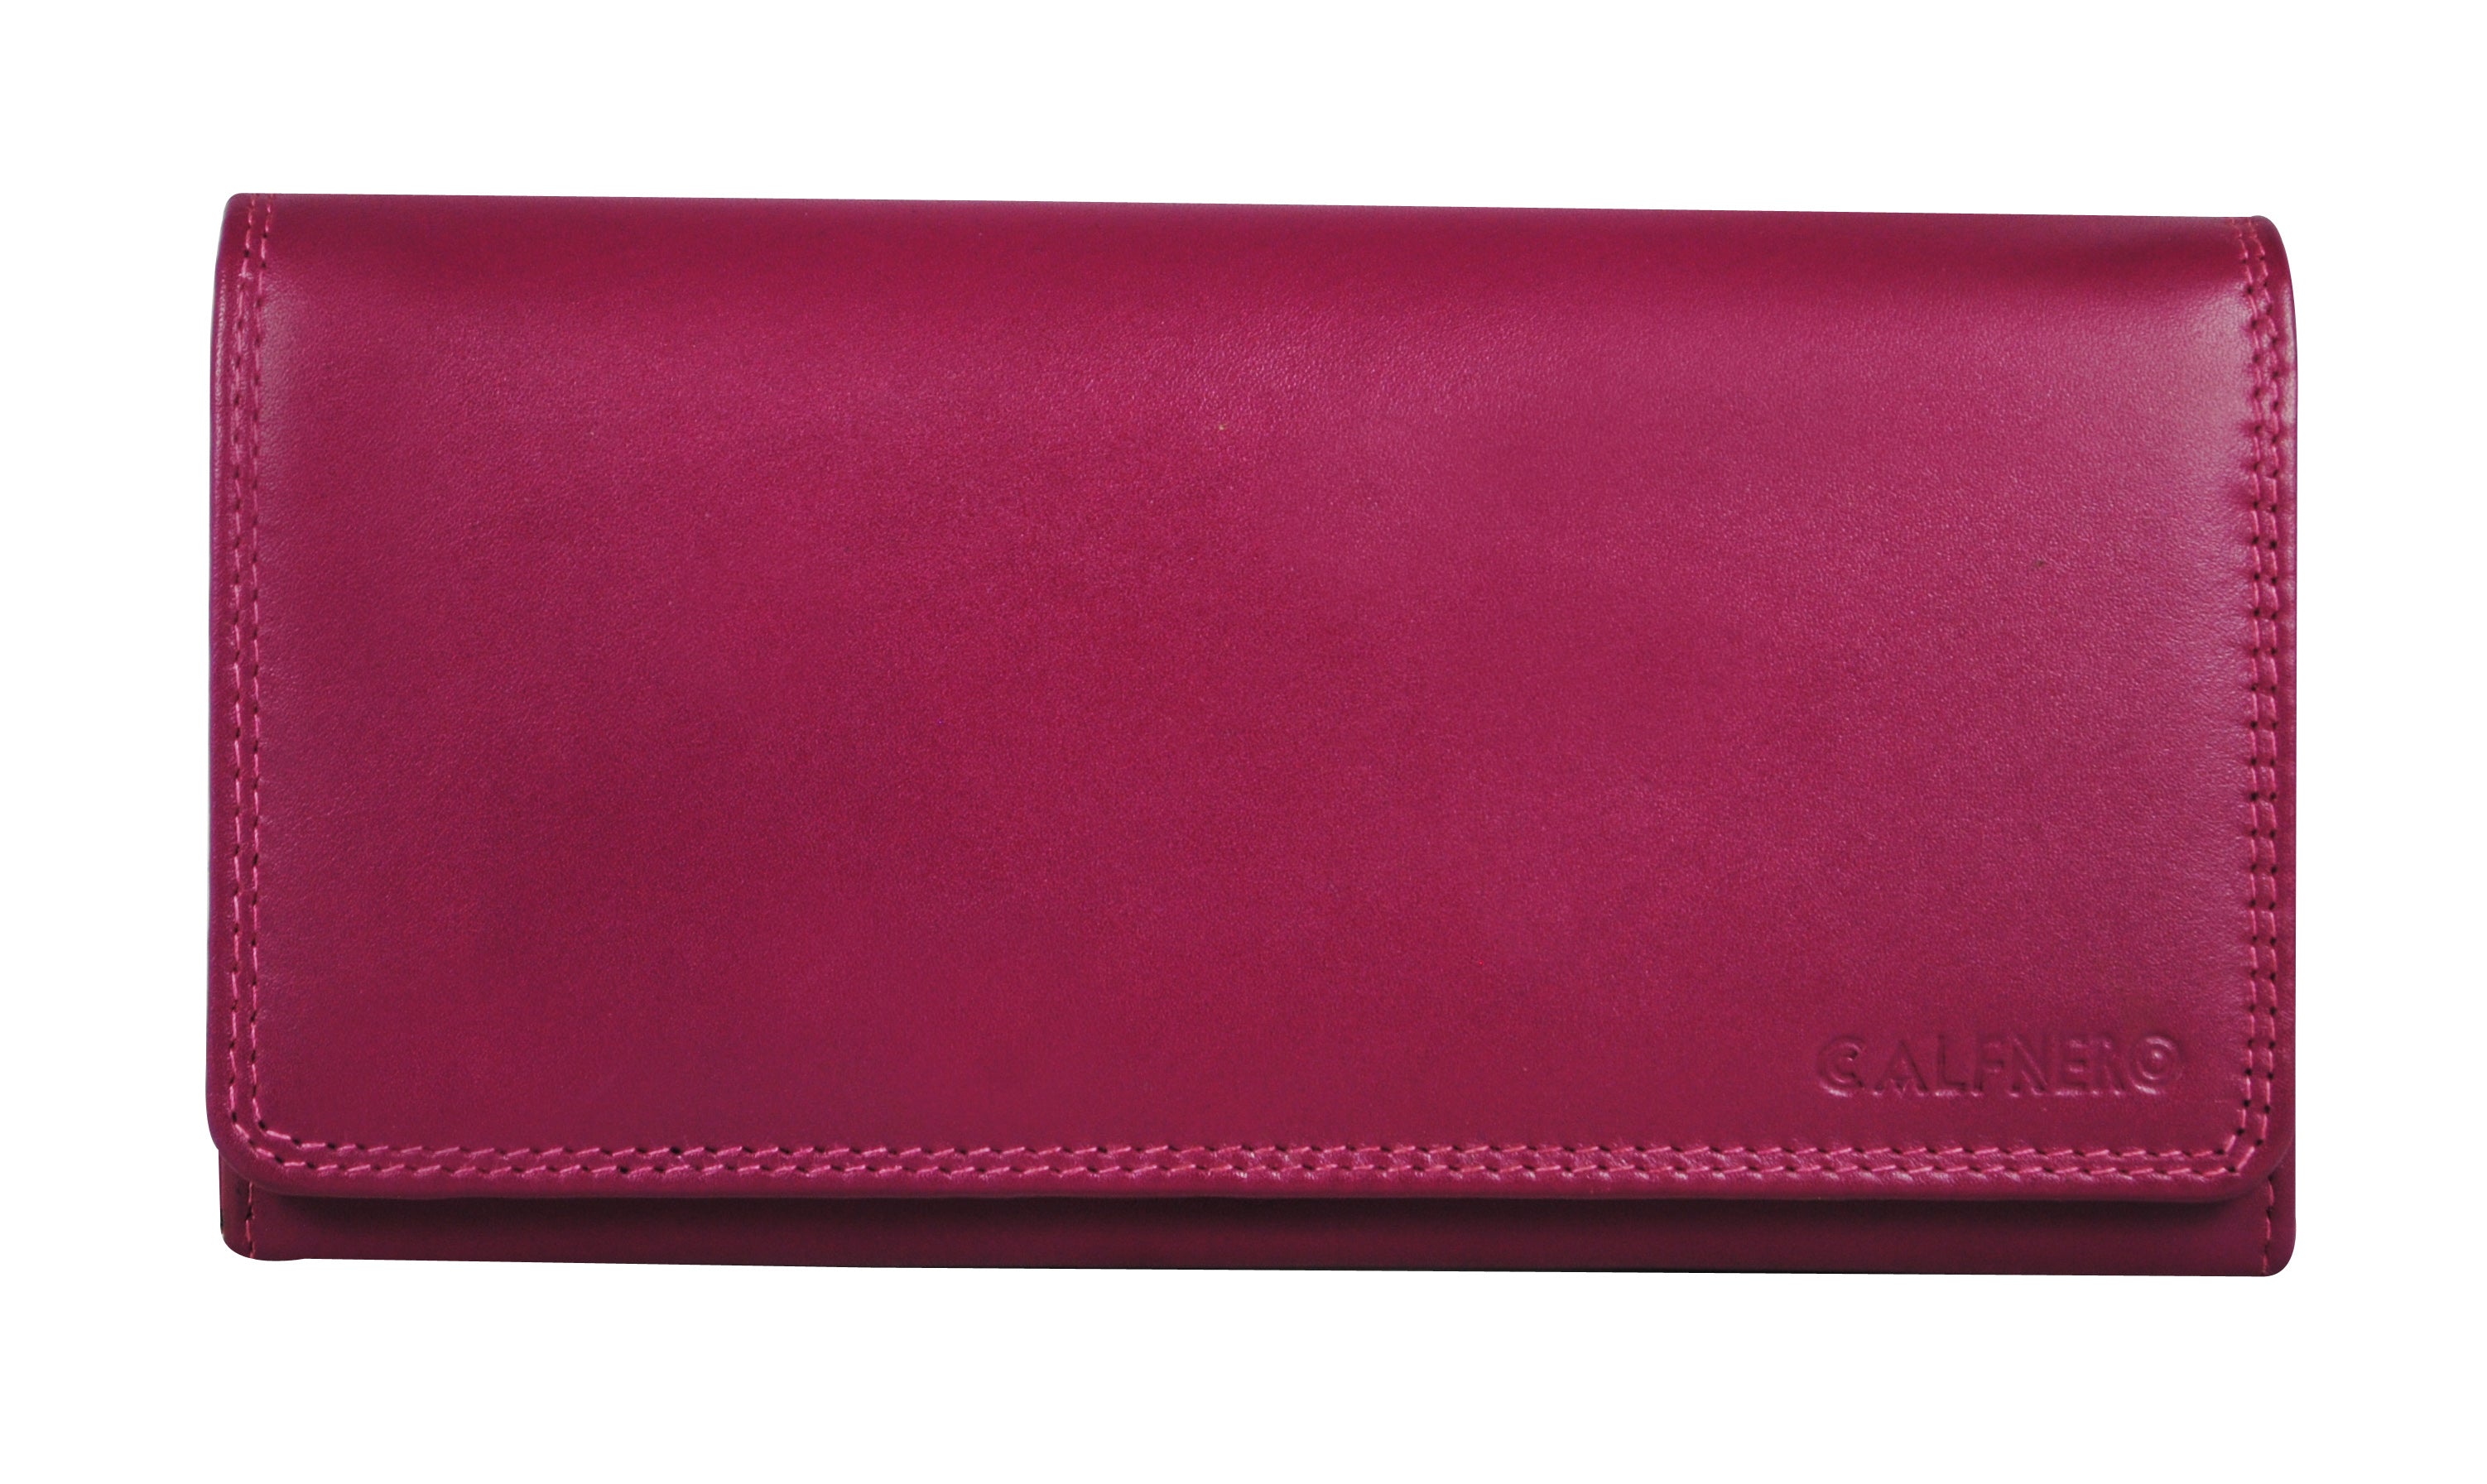 KW104- Women Bifold Leather Wallet with Zipper Pocket Case – VULKIT